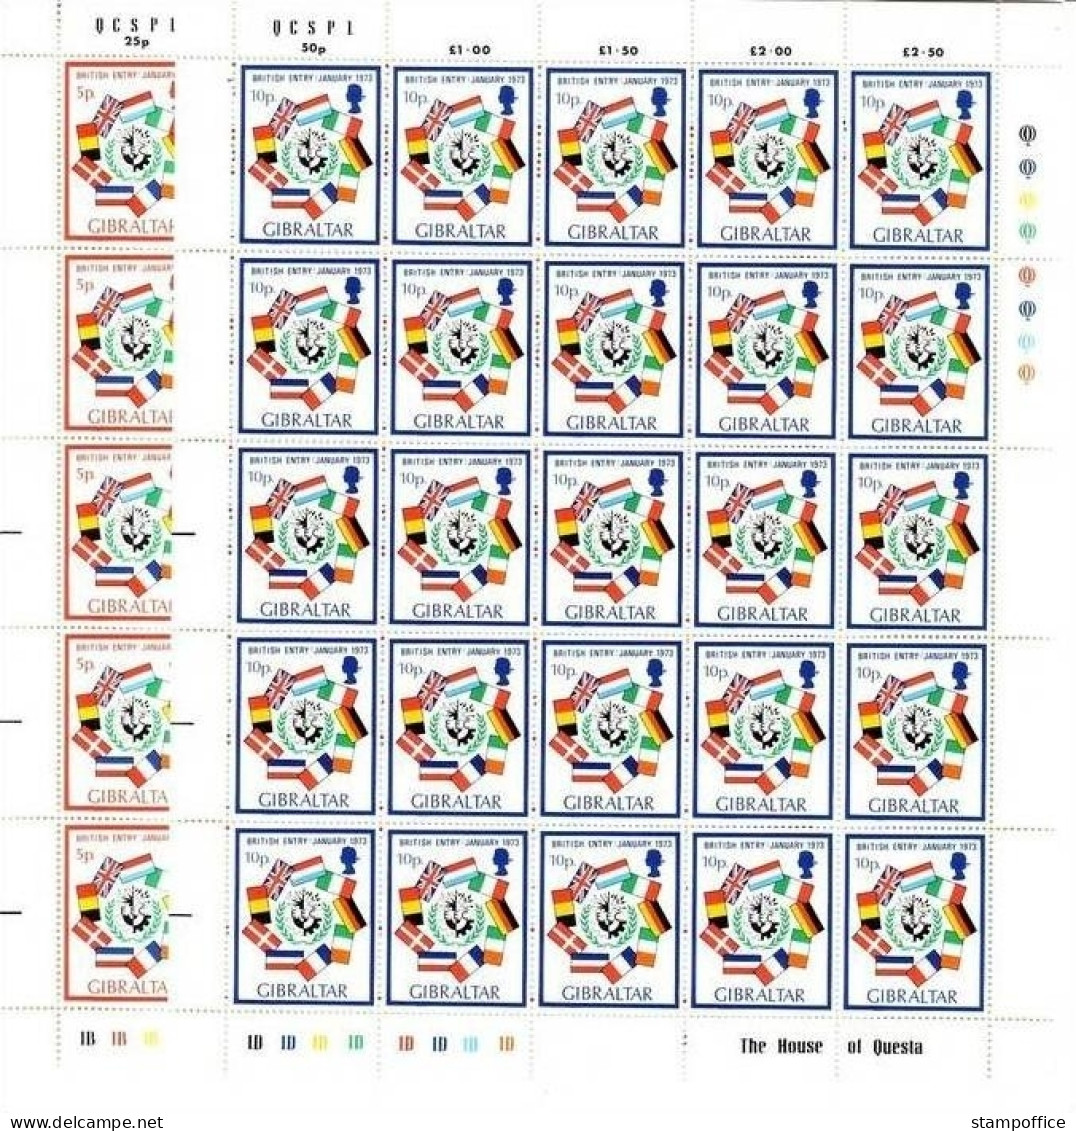 GIBRALTAR MI-NR. 297-298 POSTFRISCH(MINT) Bogen AUFNAHME IN DIE EG - FLAGGEN - Postzegels